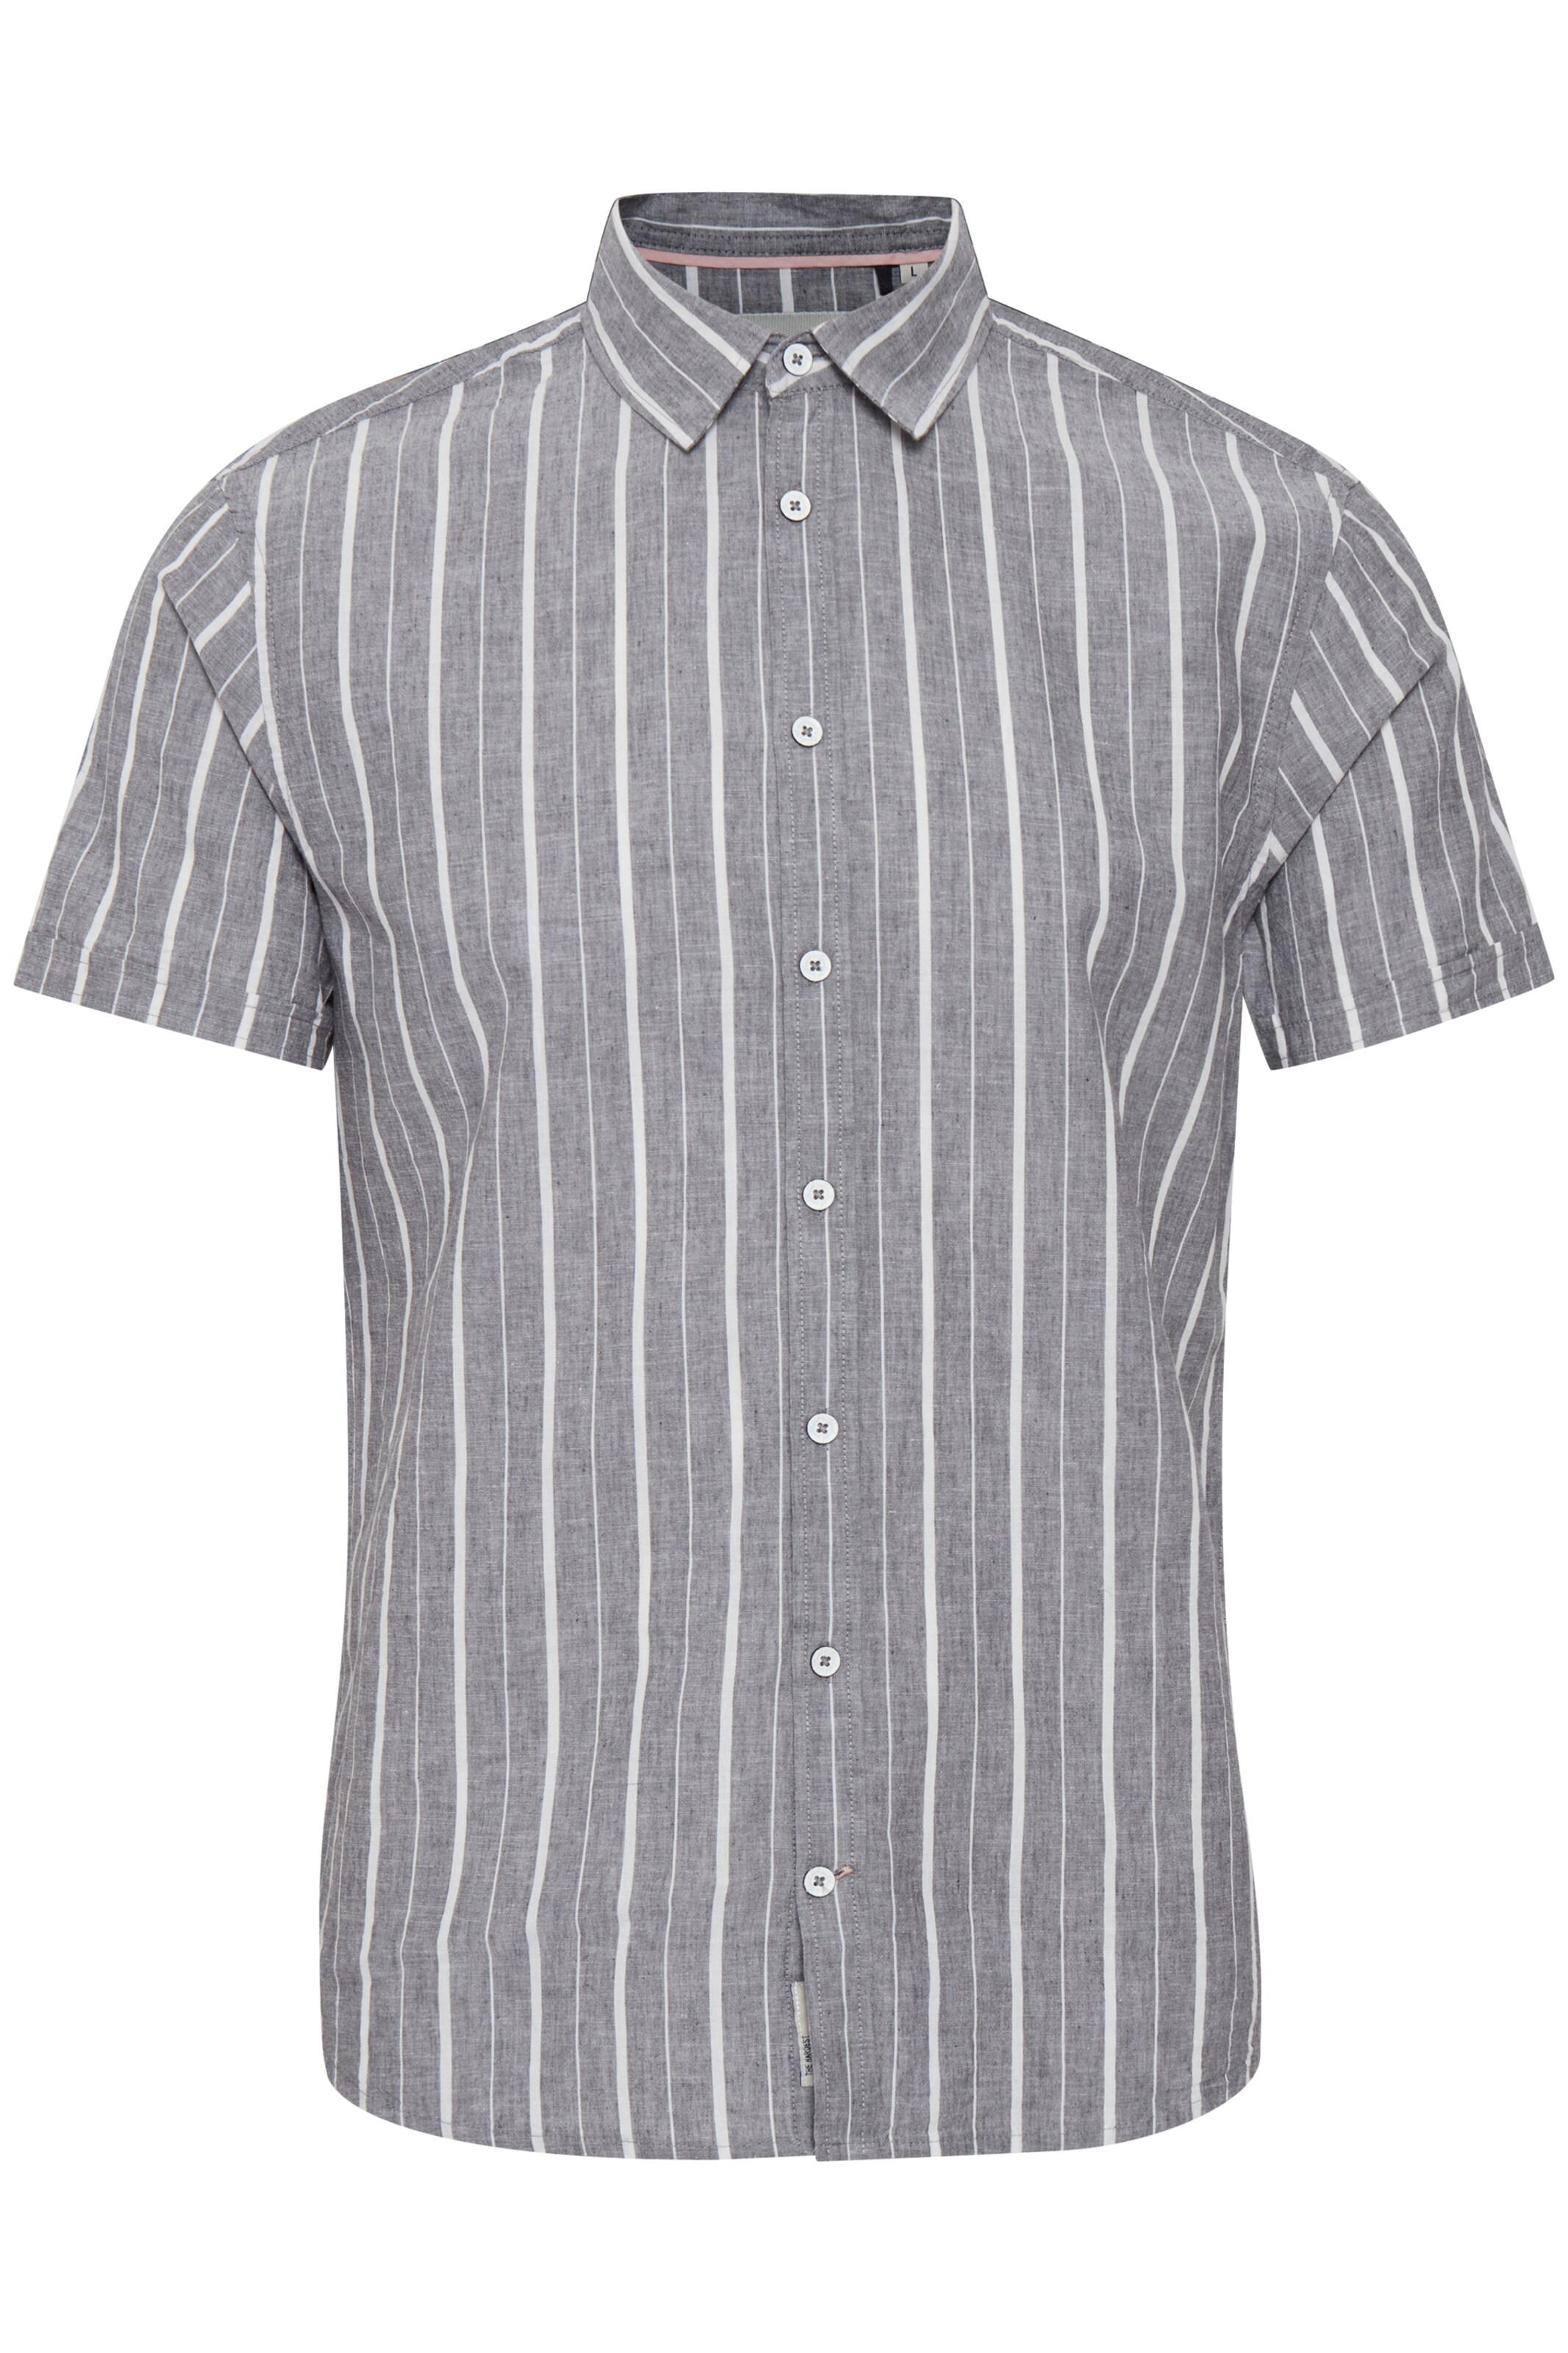 Männer Hemden BLEND Hemd in Graumeliert, Weiß - TE55506